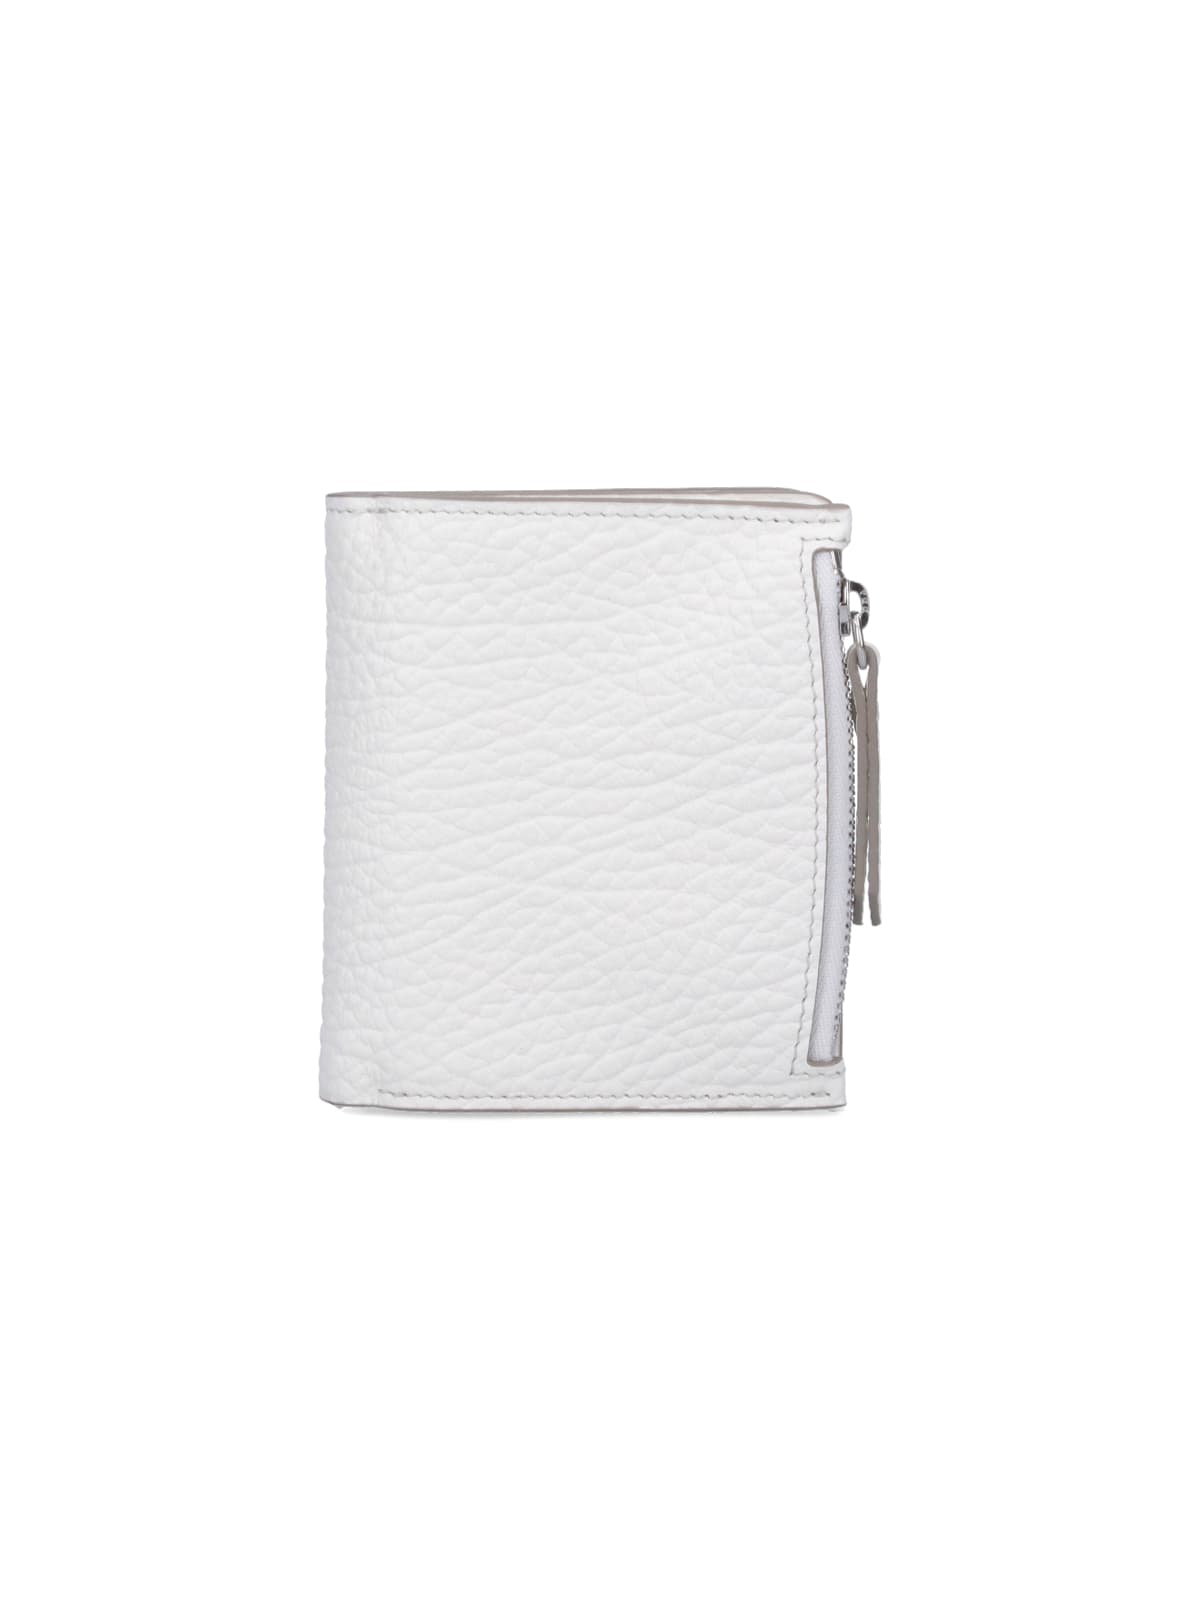 Maison Margiela Four Stitches Wallet In White